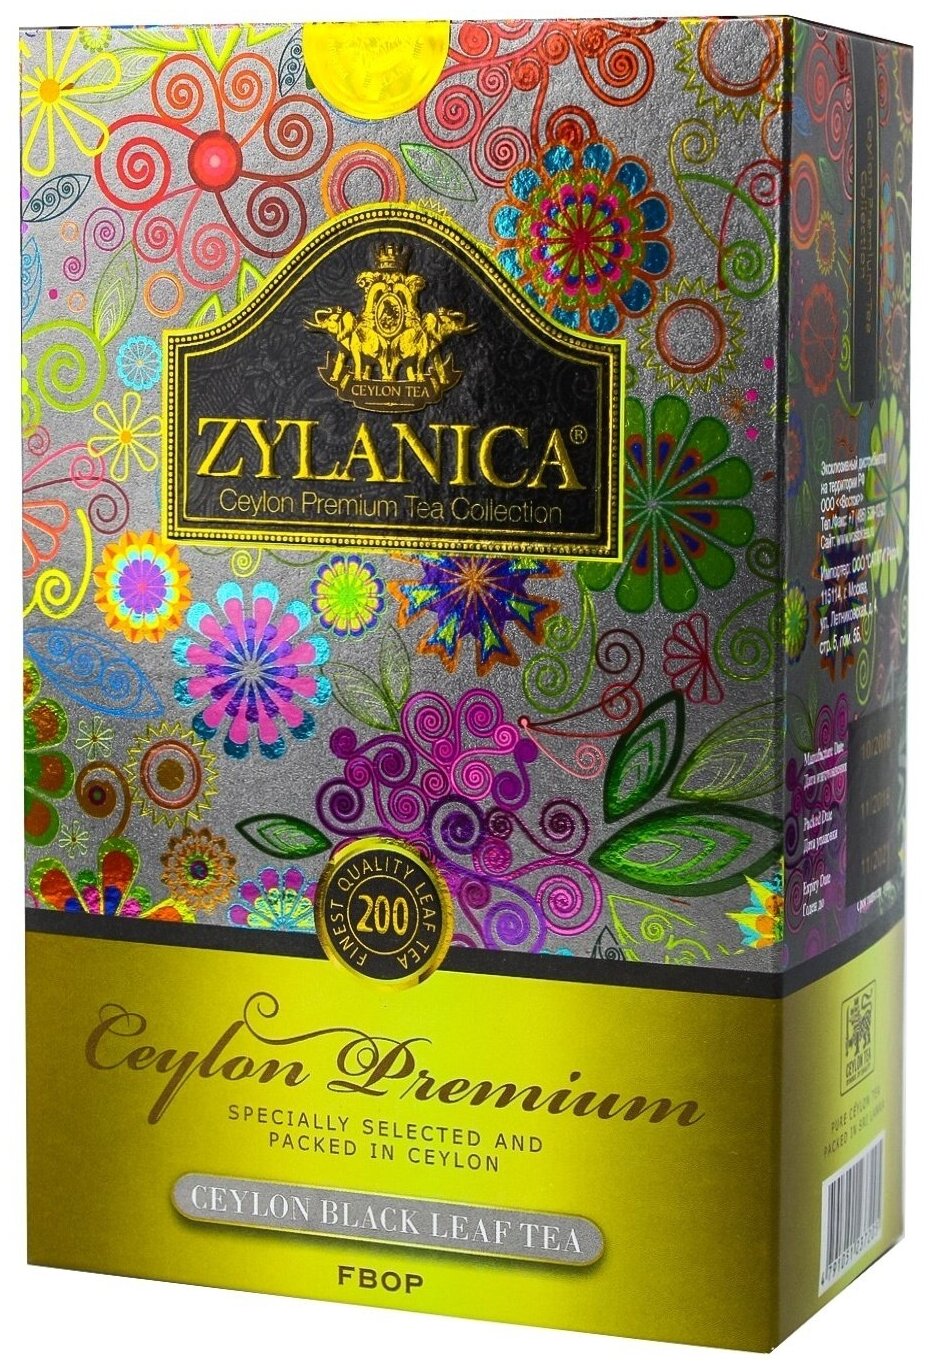 Чай черный Zylanica Ceylon Premium Collection FBOP средний лист 200 гр.